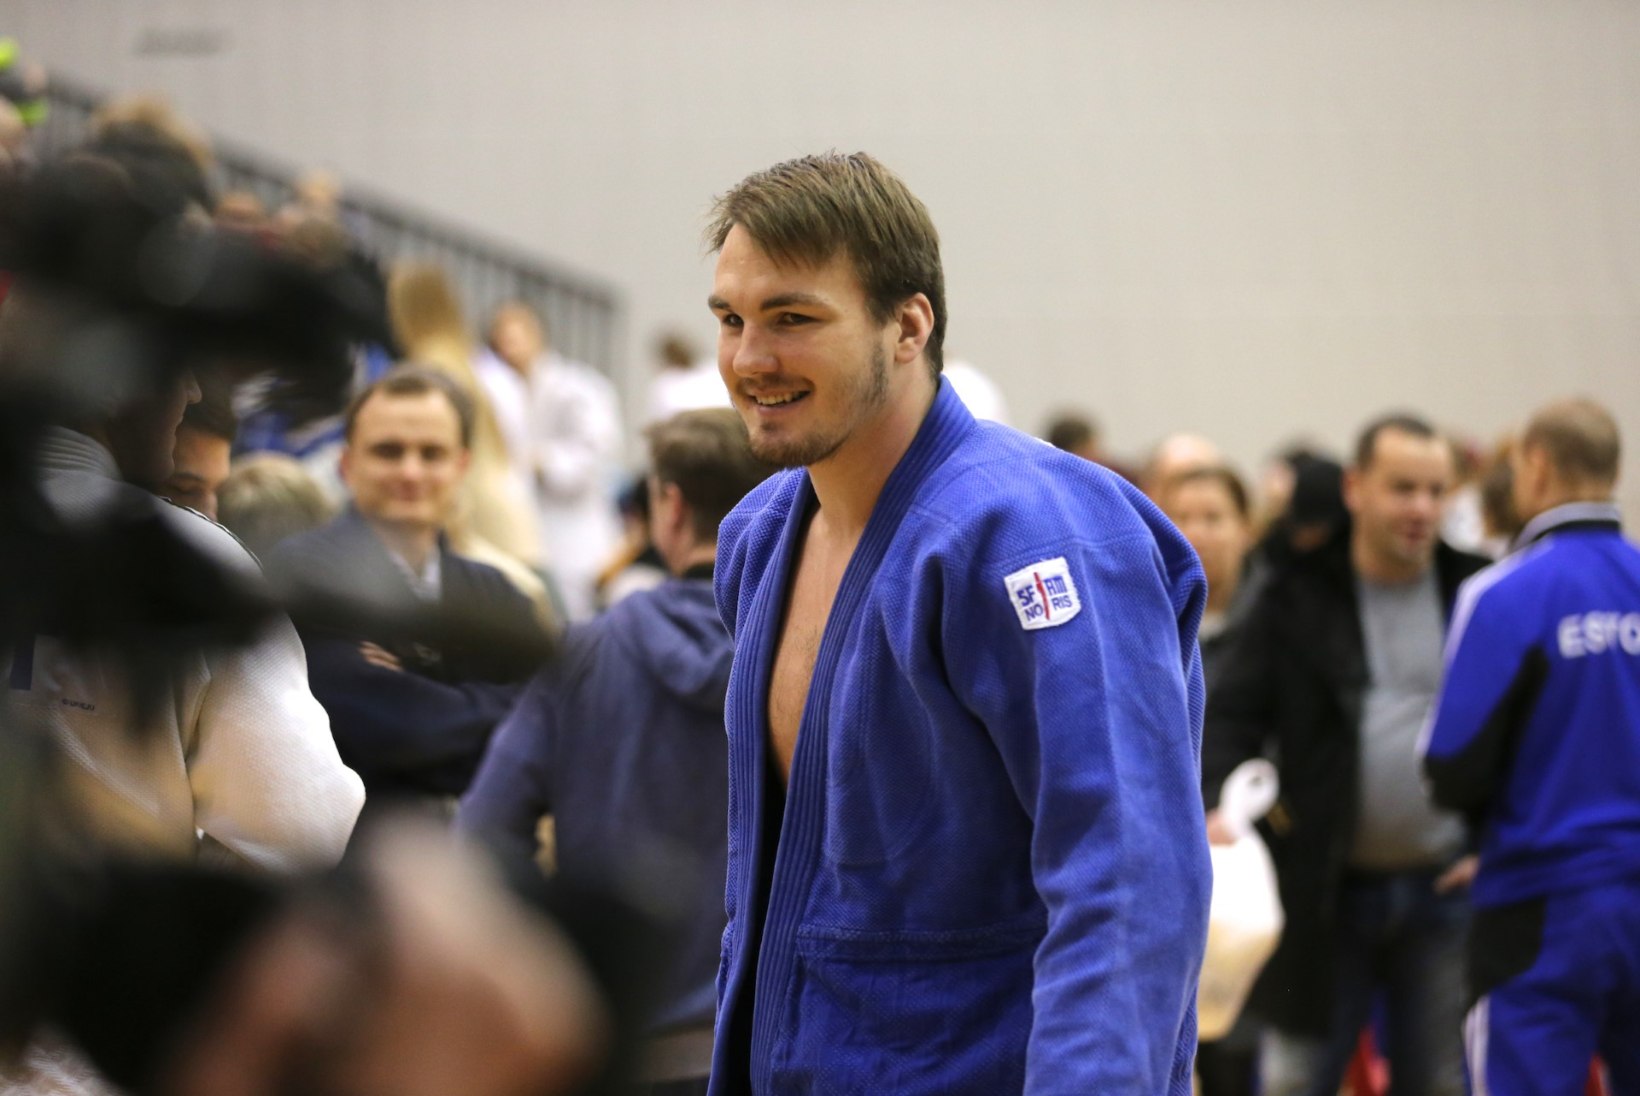 Eesti judoka sai universiaadil hõbemedali!